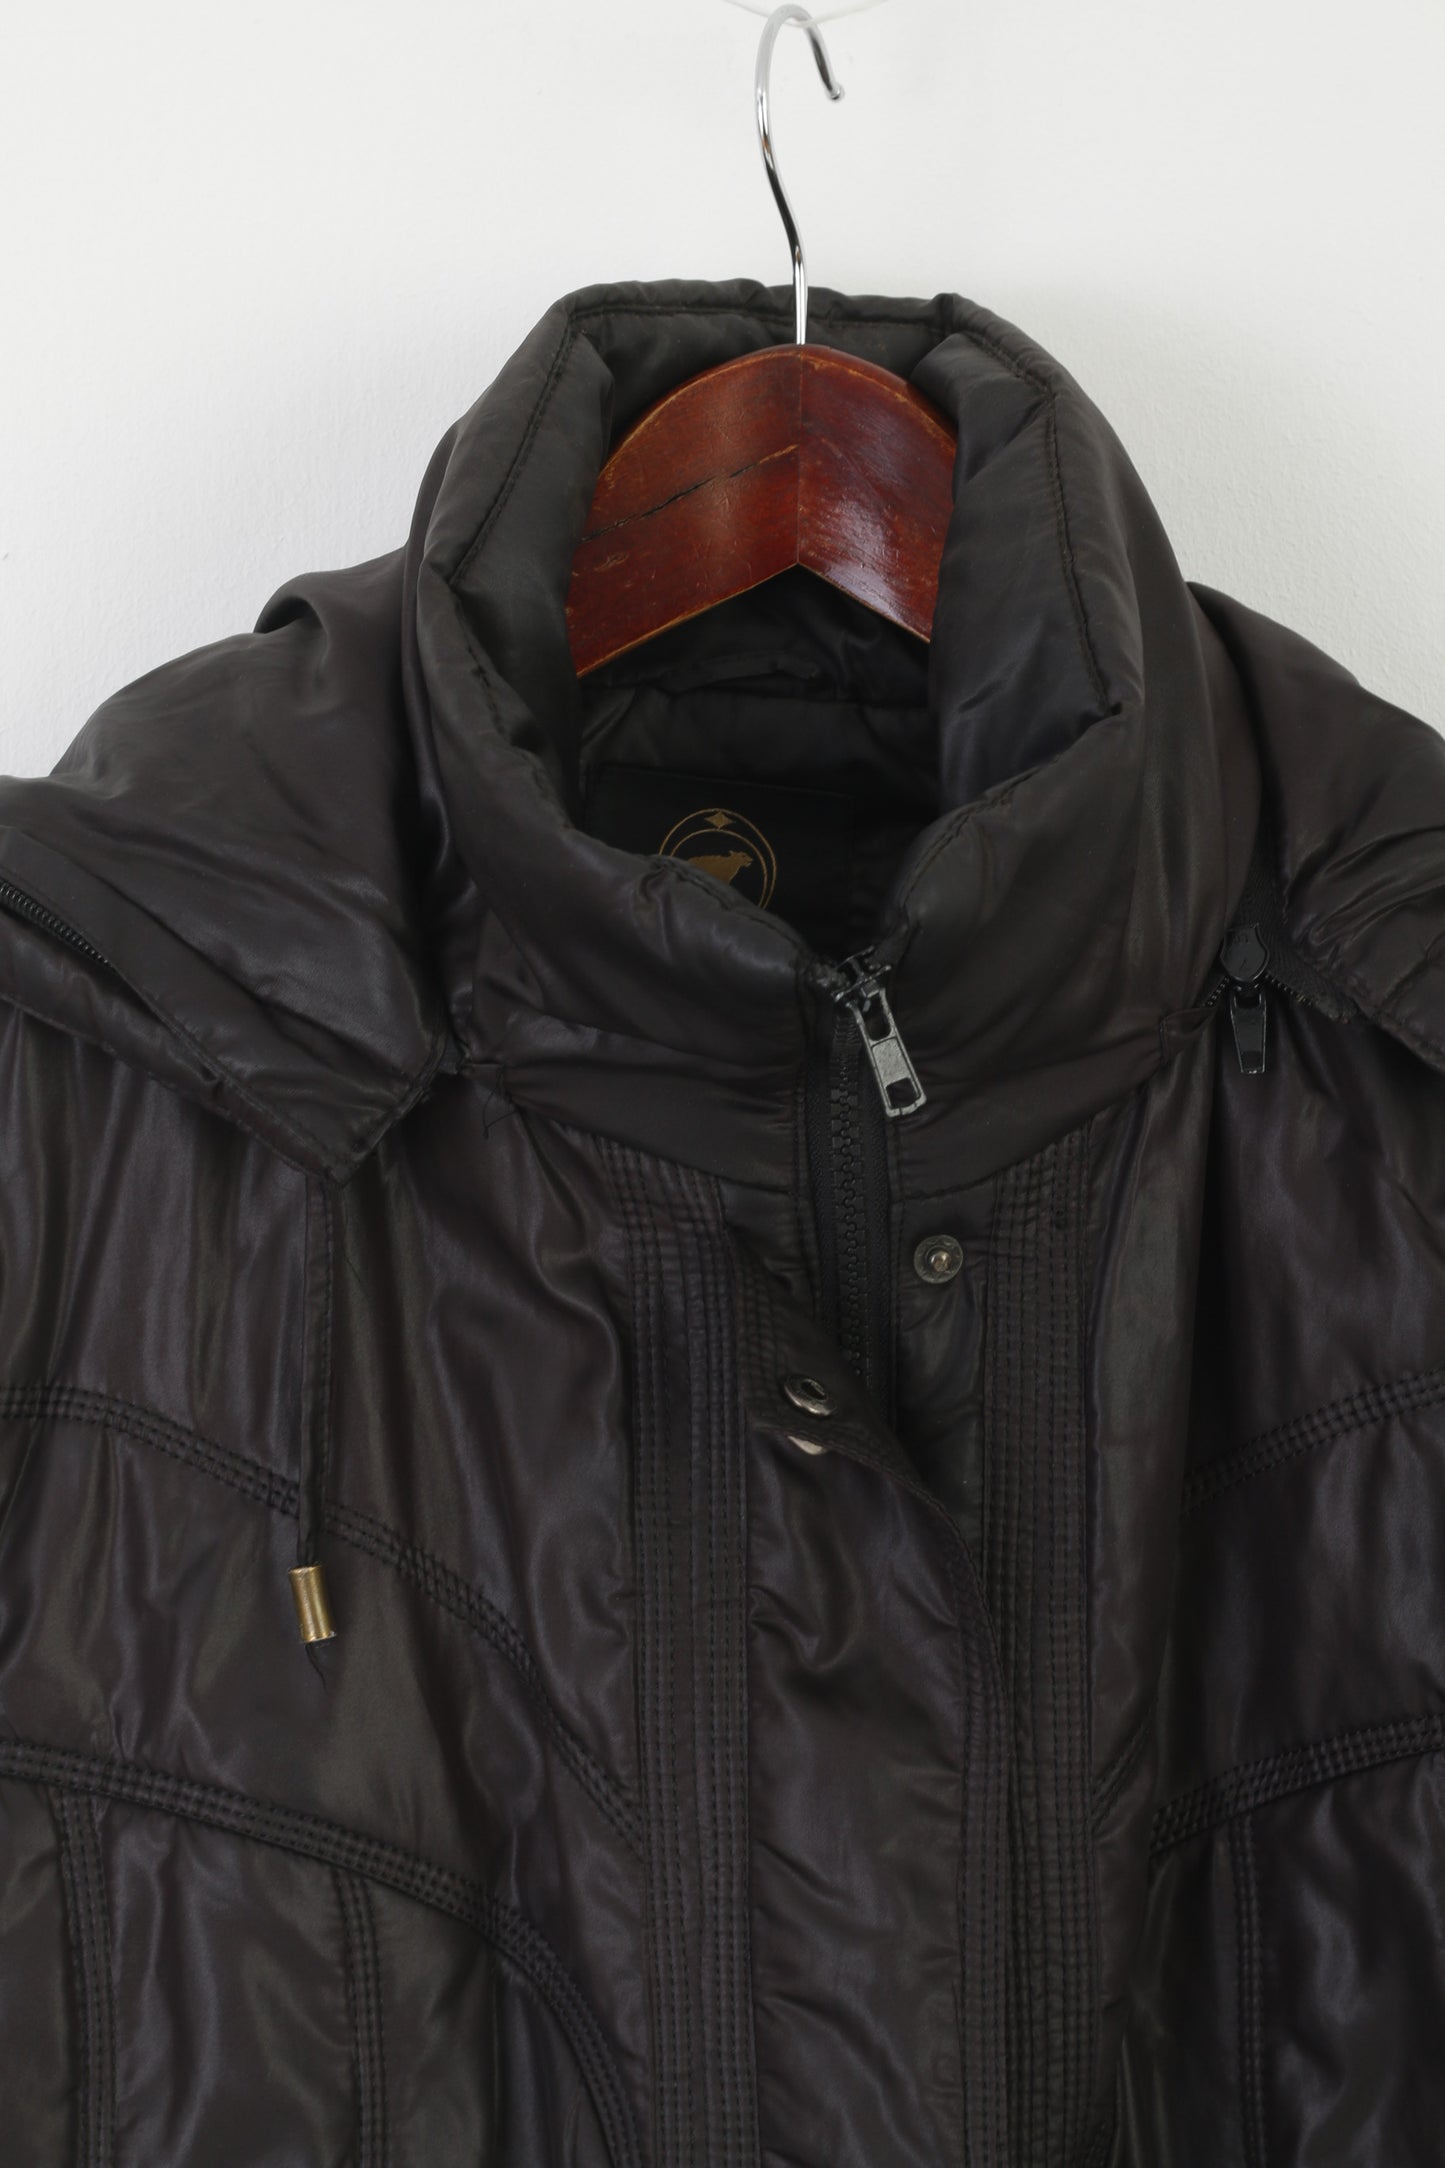 Icebear Women XXL (XL) Jacket Black Padded Hood Full Zipper Shiny Top